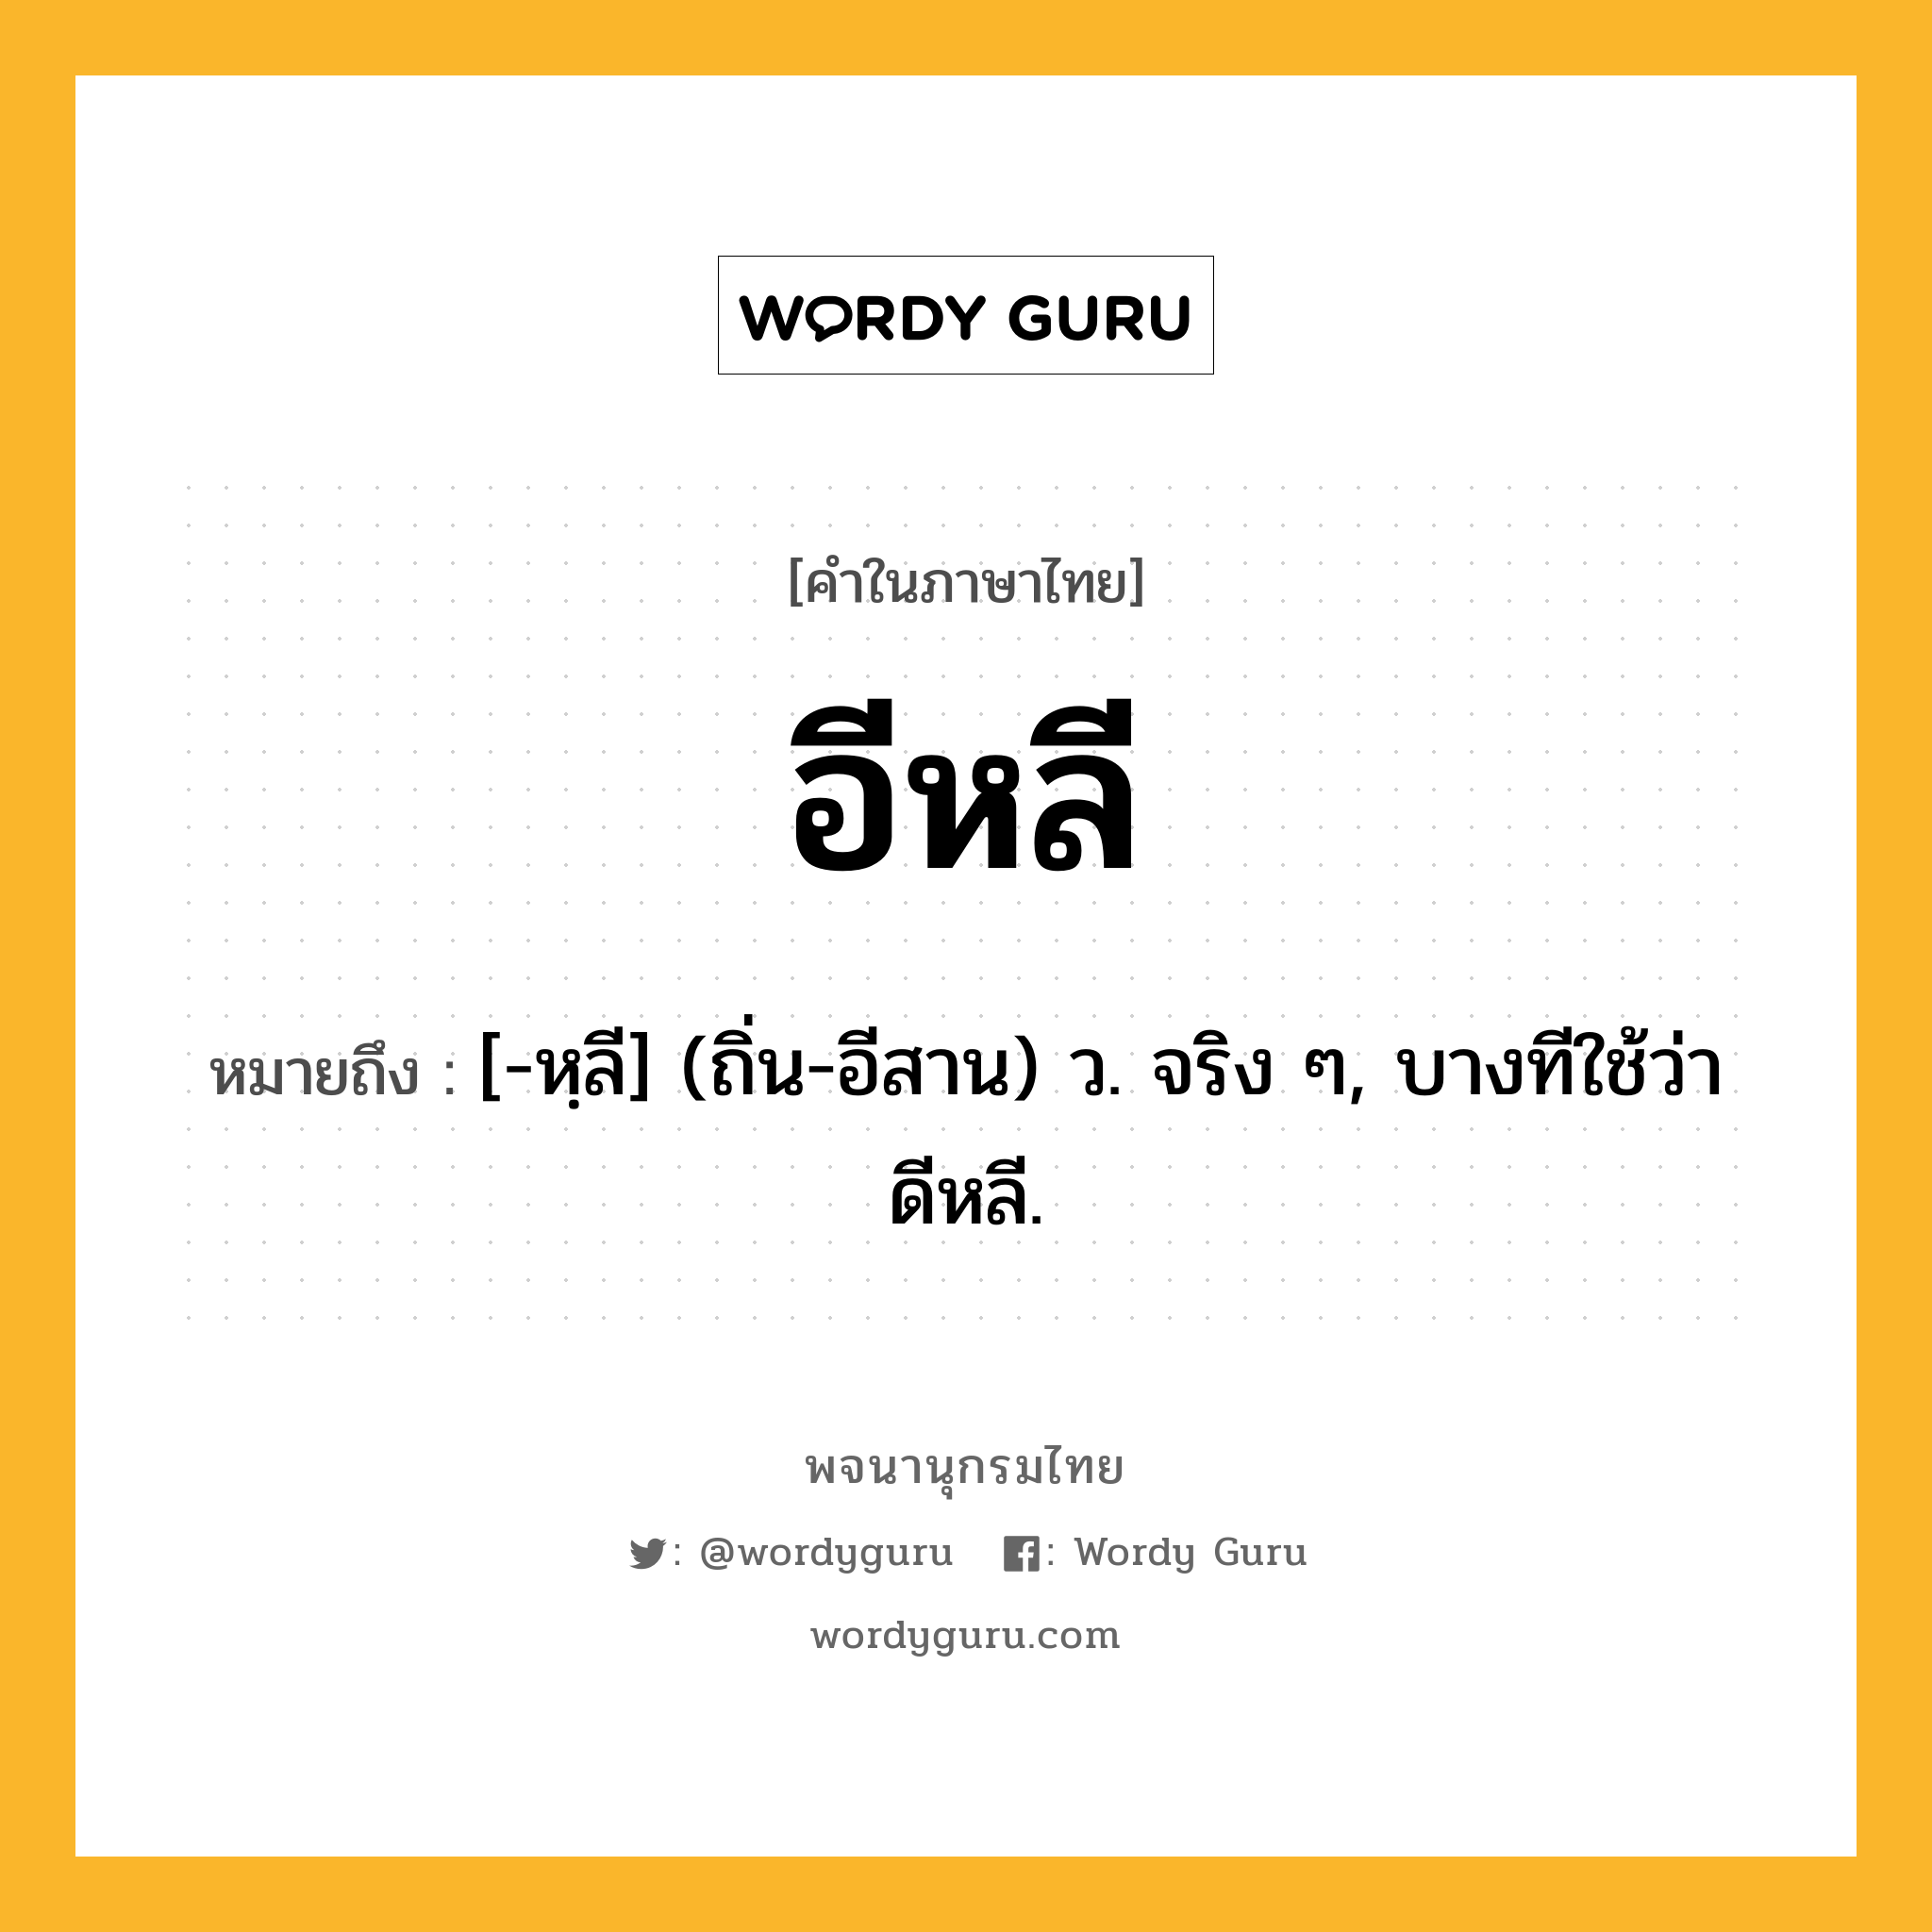 อีหลี ความหมาย หมายถึงอะไร?, คำในภาษาไทย อีหลี หมายถึง [-หฺลี] (ถิ่น-อีสาน) ว. จริง ๆ, บางทีใช้ว่า ดีหลี.